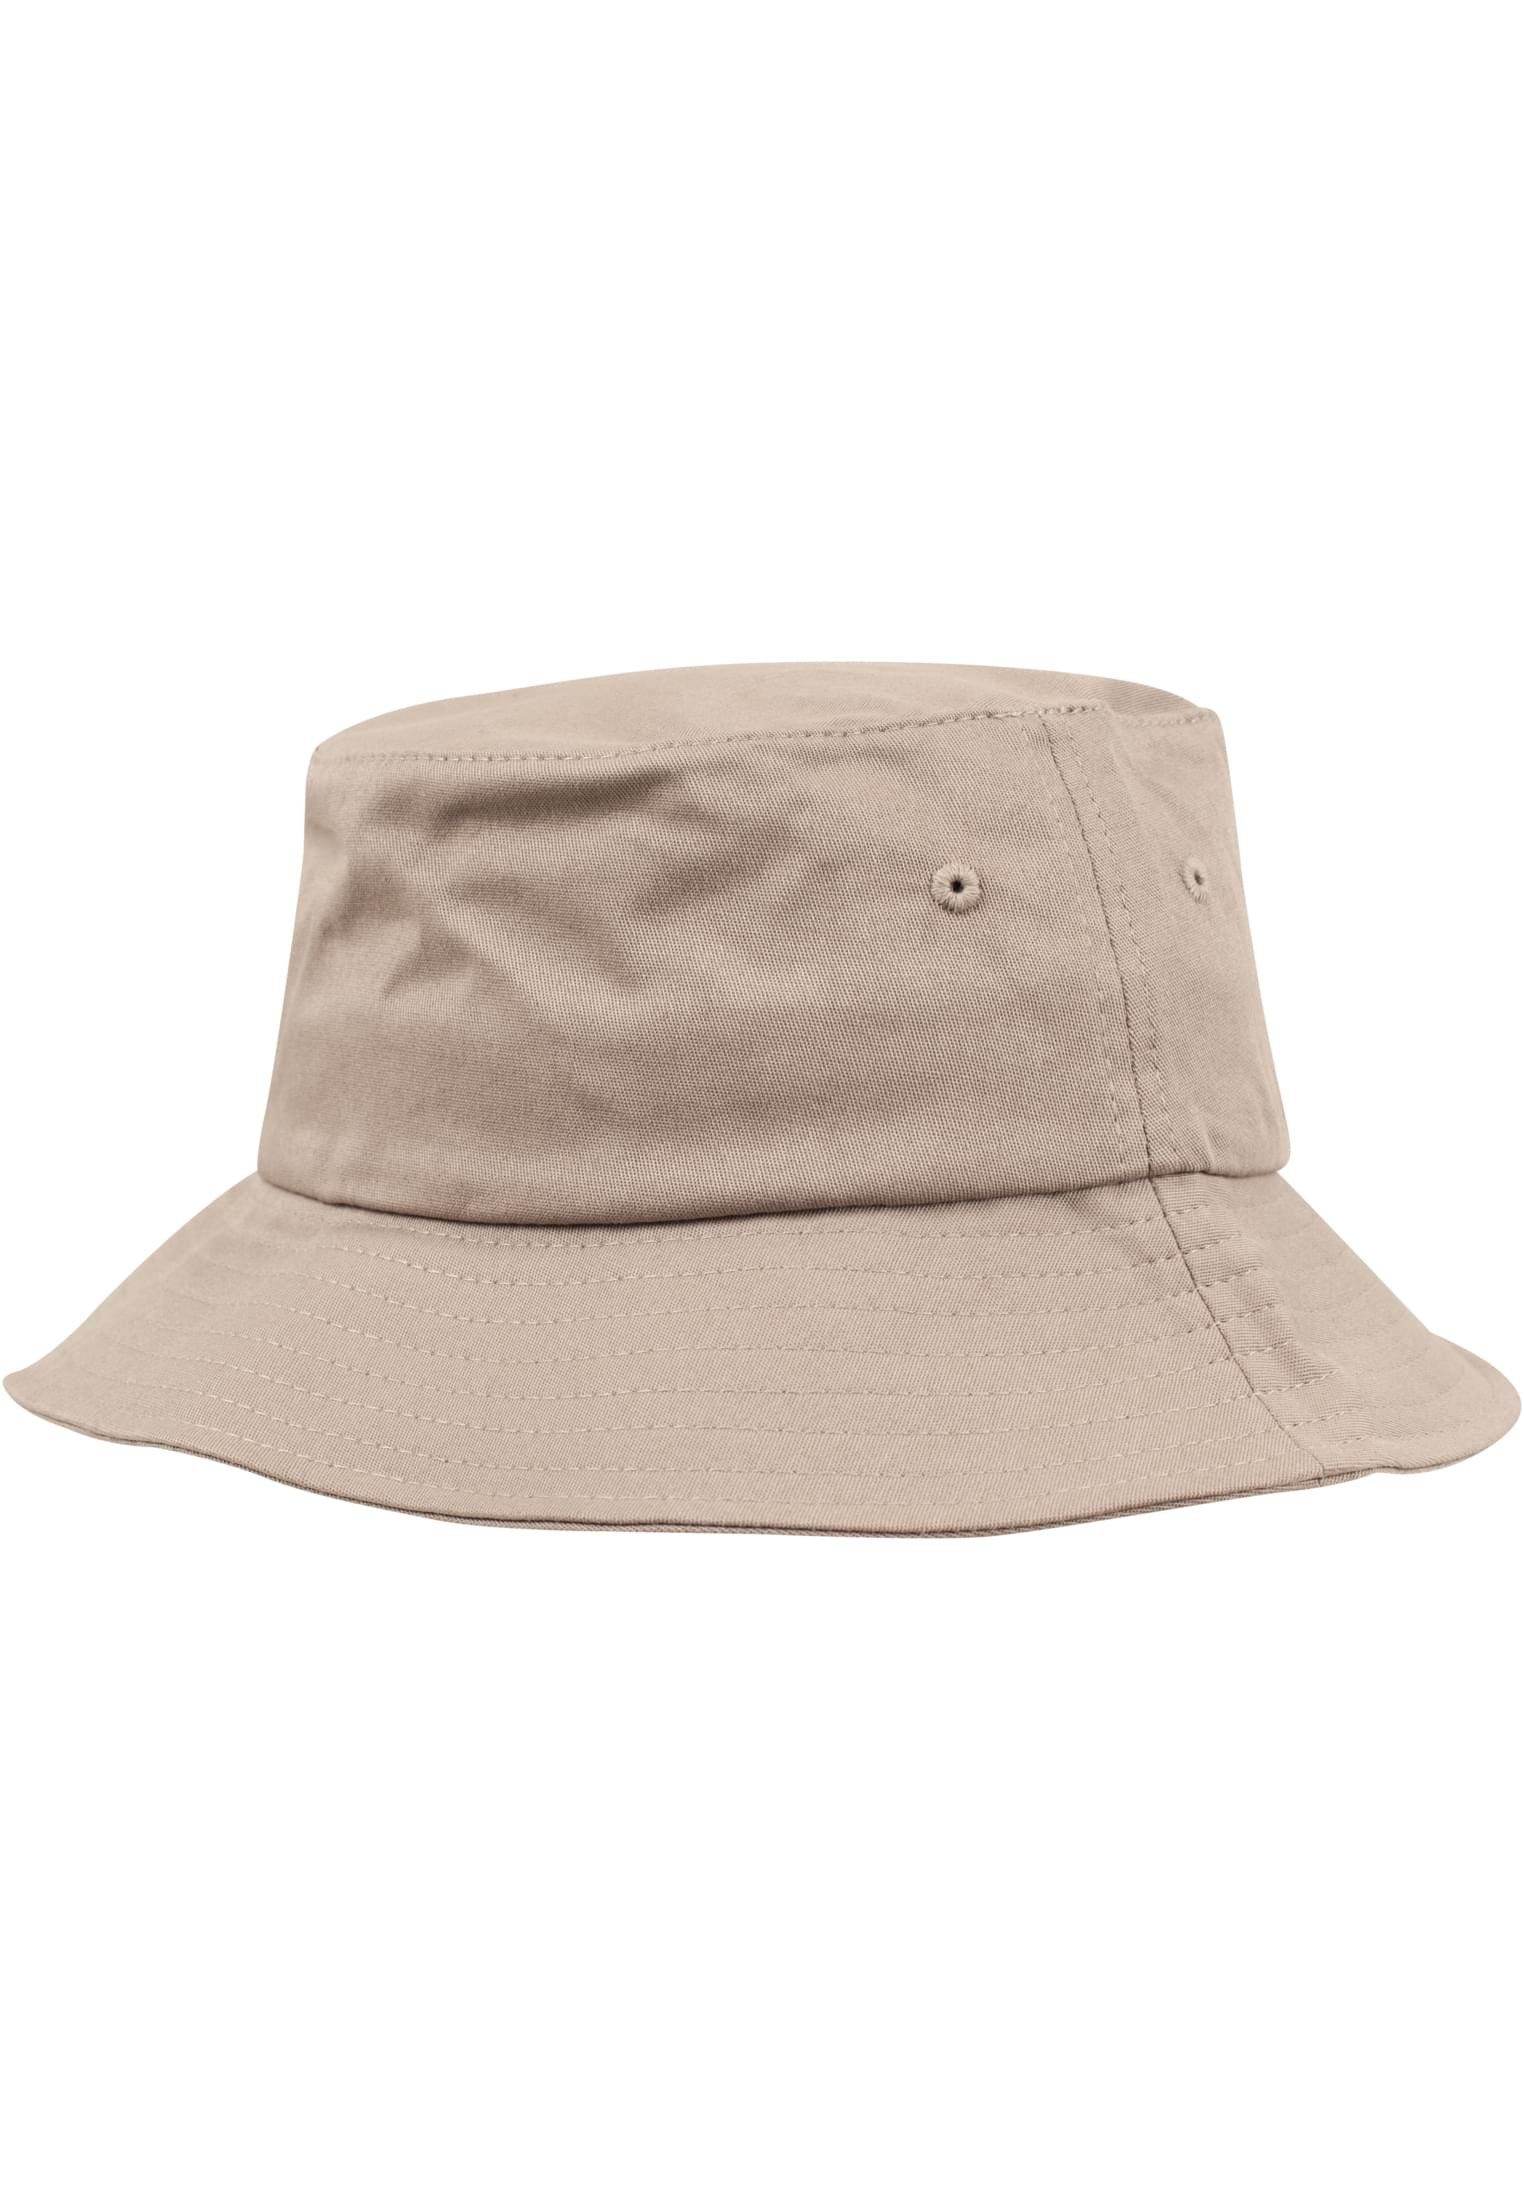 Cap khaki Flexfit Flexfit Twill Accessoires Flex Bucket Cotton Hat